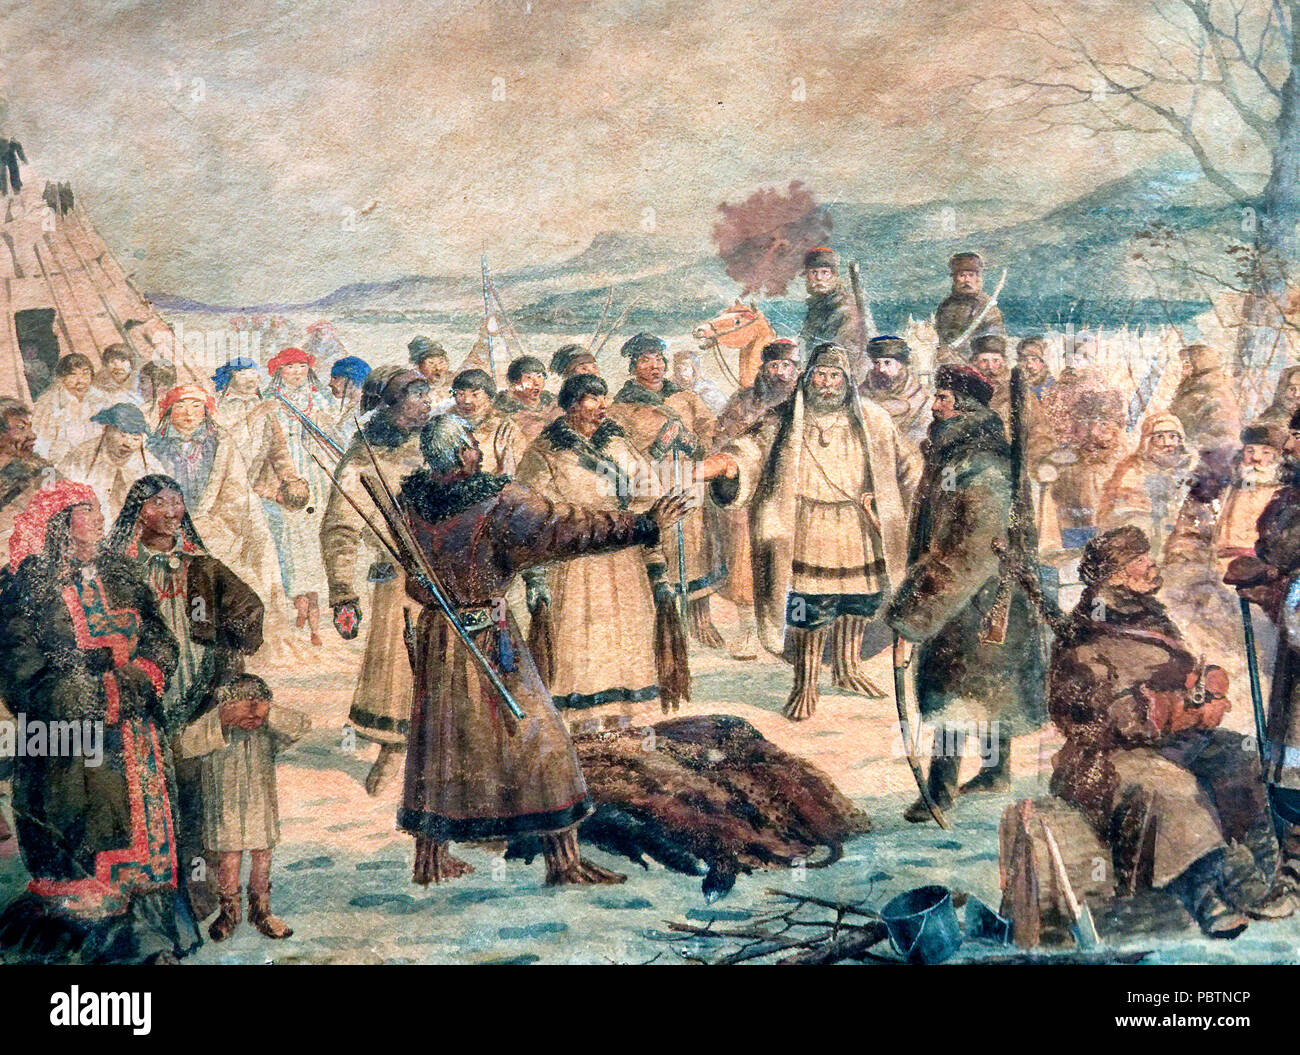 Les cosaques du gouvernorat de Yeniseysk la collecte yasak. Aquarelle du 19ème siècle par un peintre inconnu. Banque D'Images